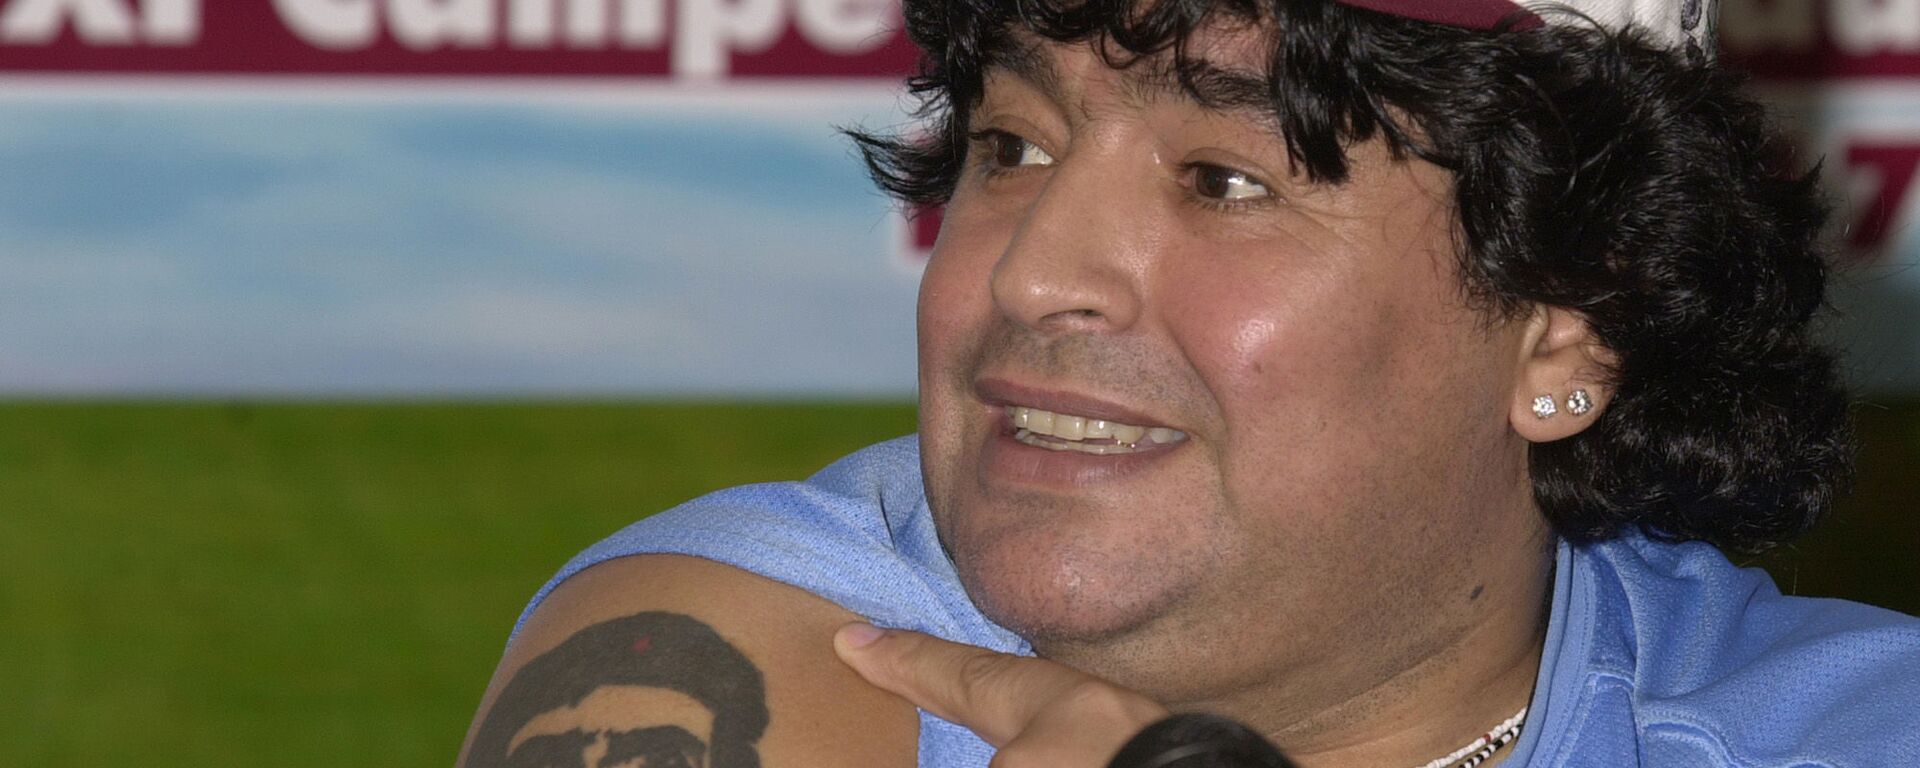 Diego Armando Maradona y su tatuaje del Che Guevara  - Sputnik Mundo, 1920, 27.11.2020